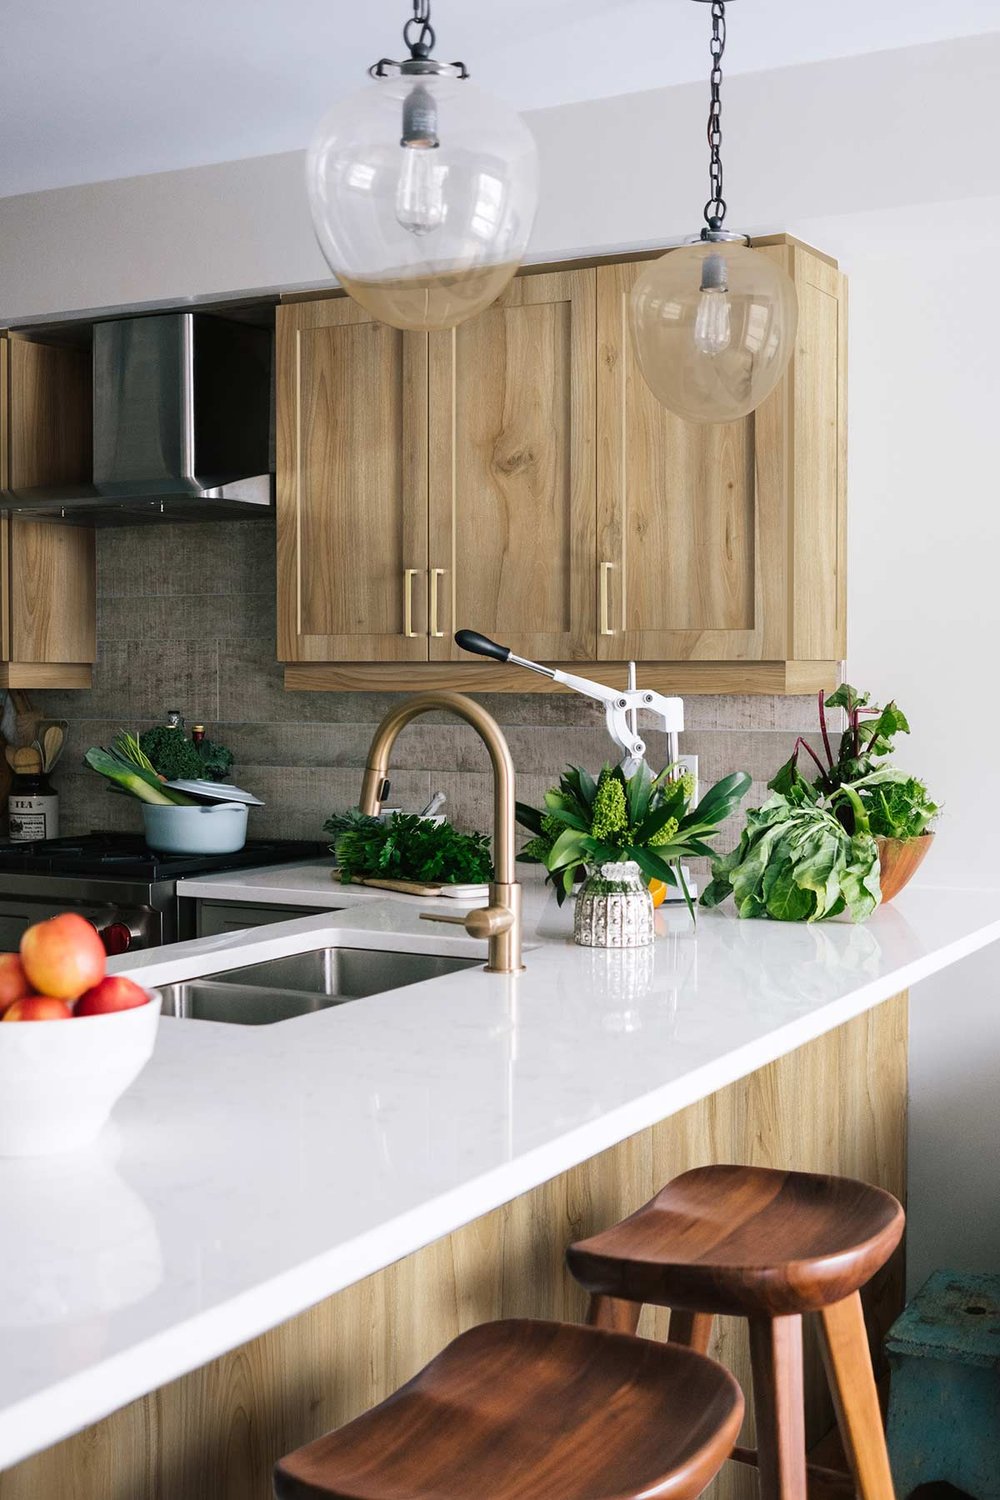 Stylish kitchen with warm woodgrain cabinets